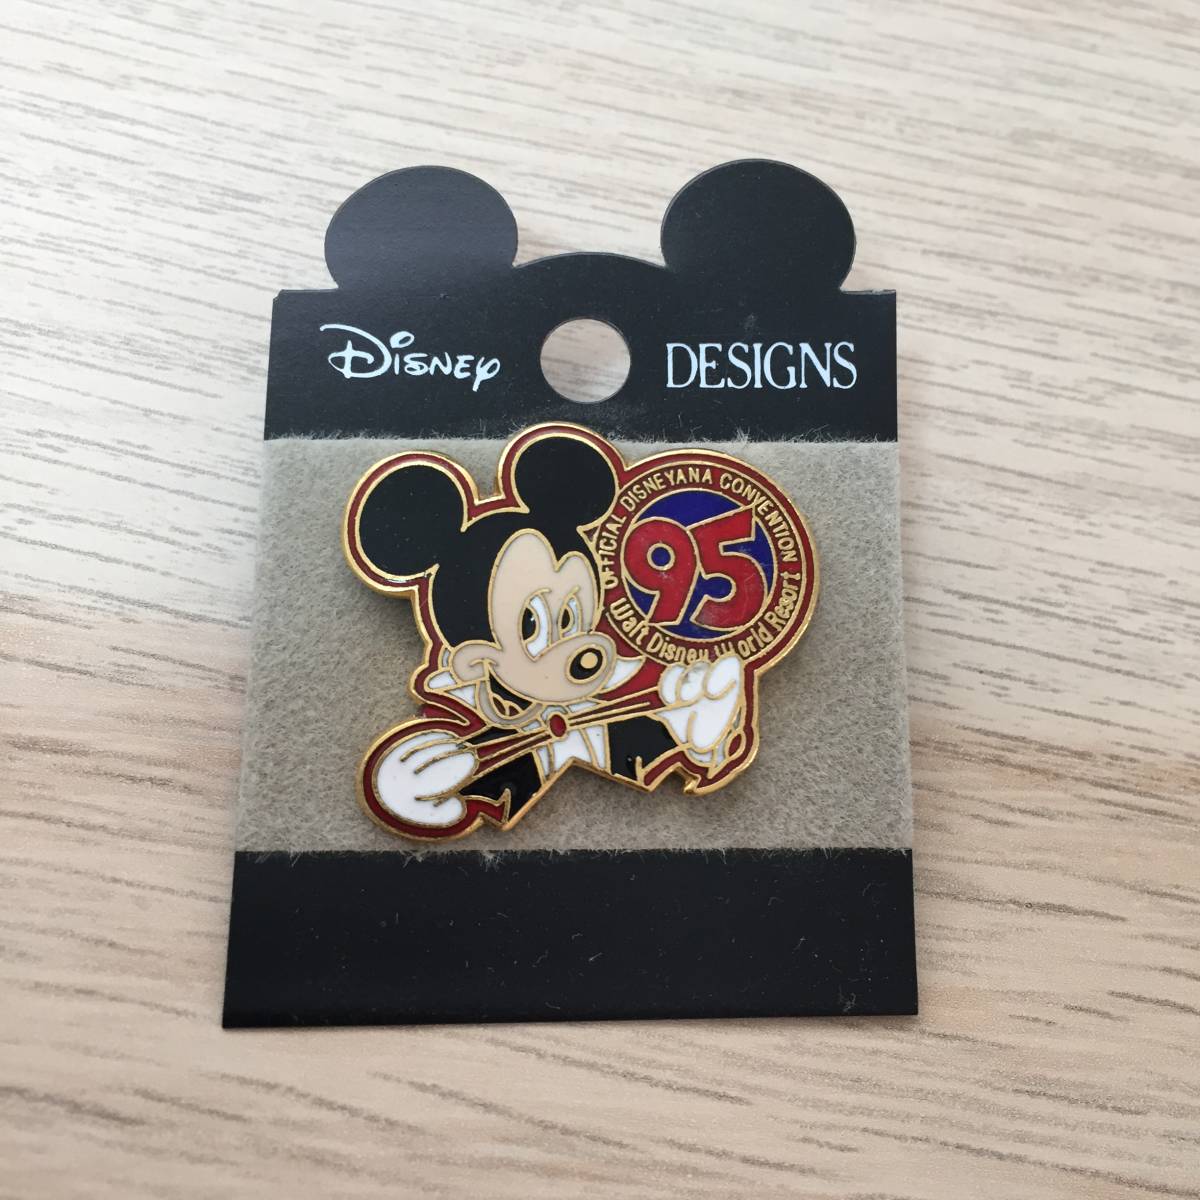  официальный Disney дыра темно синий Ben shon Mickey значок в Японии не продается * прекрасный товар 